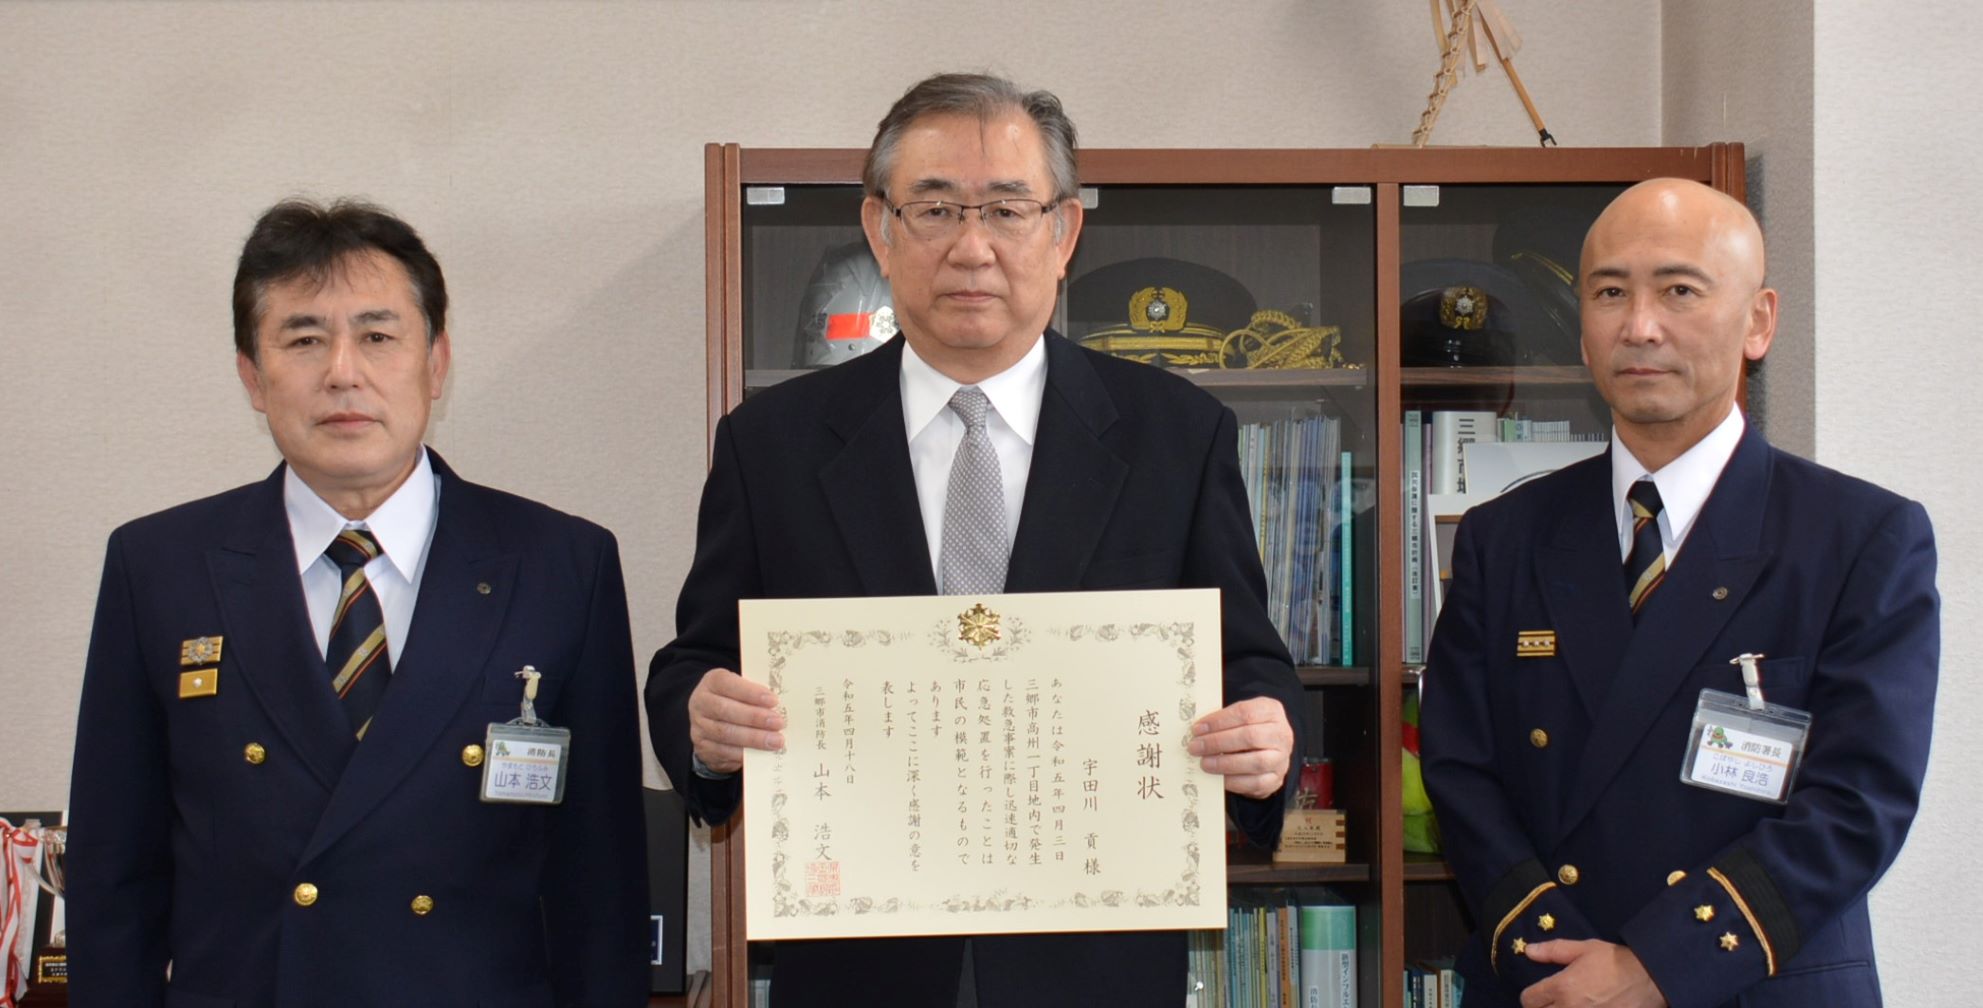 宇田川貢さんが感謝状を持っており、両サイドに消防長と消防署長が横一列に並んで記念撮影をしている写真